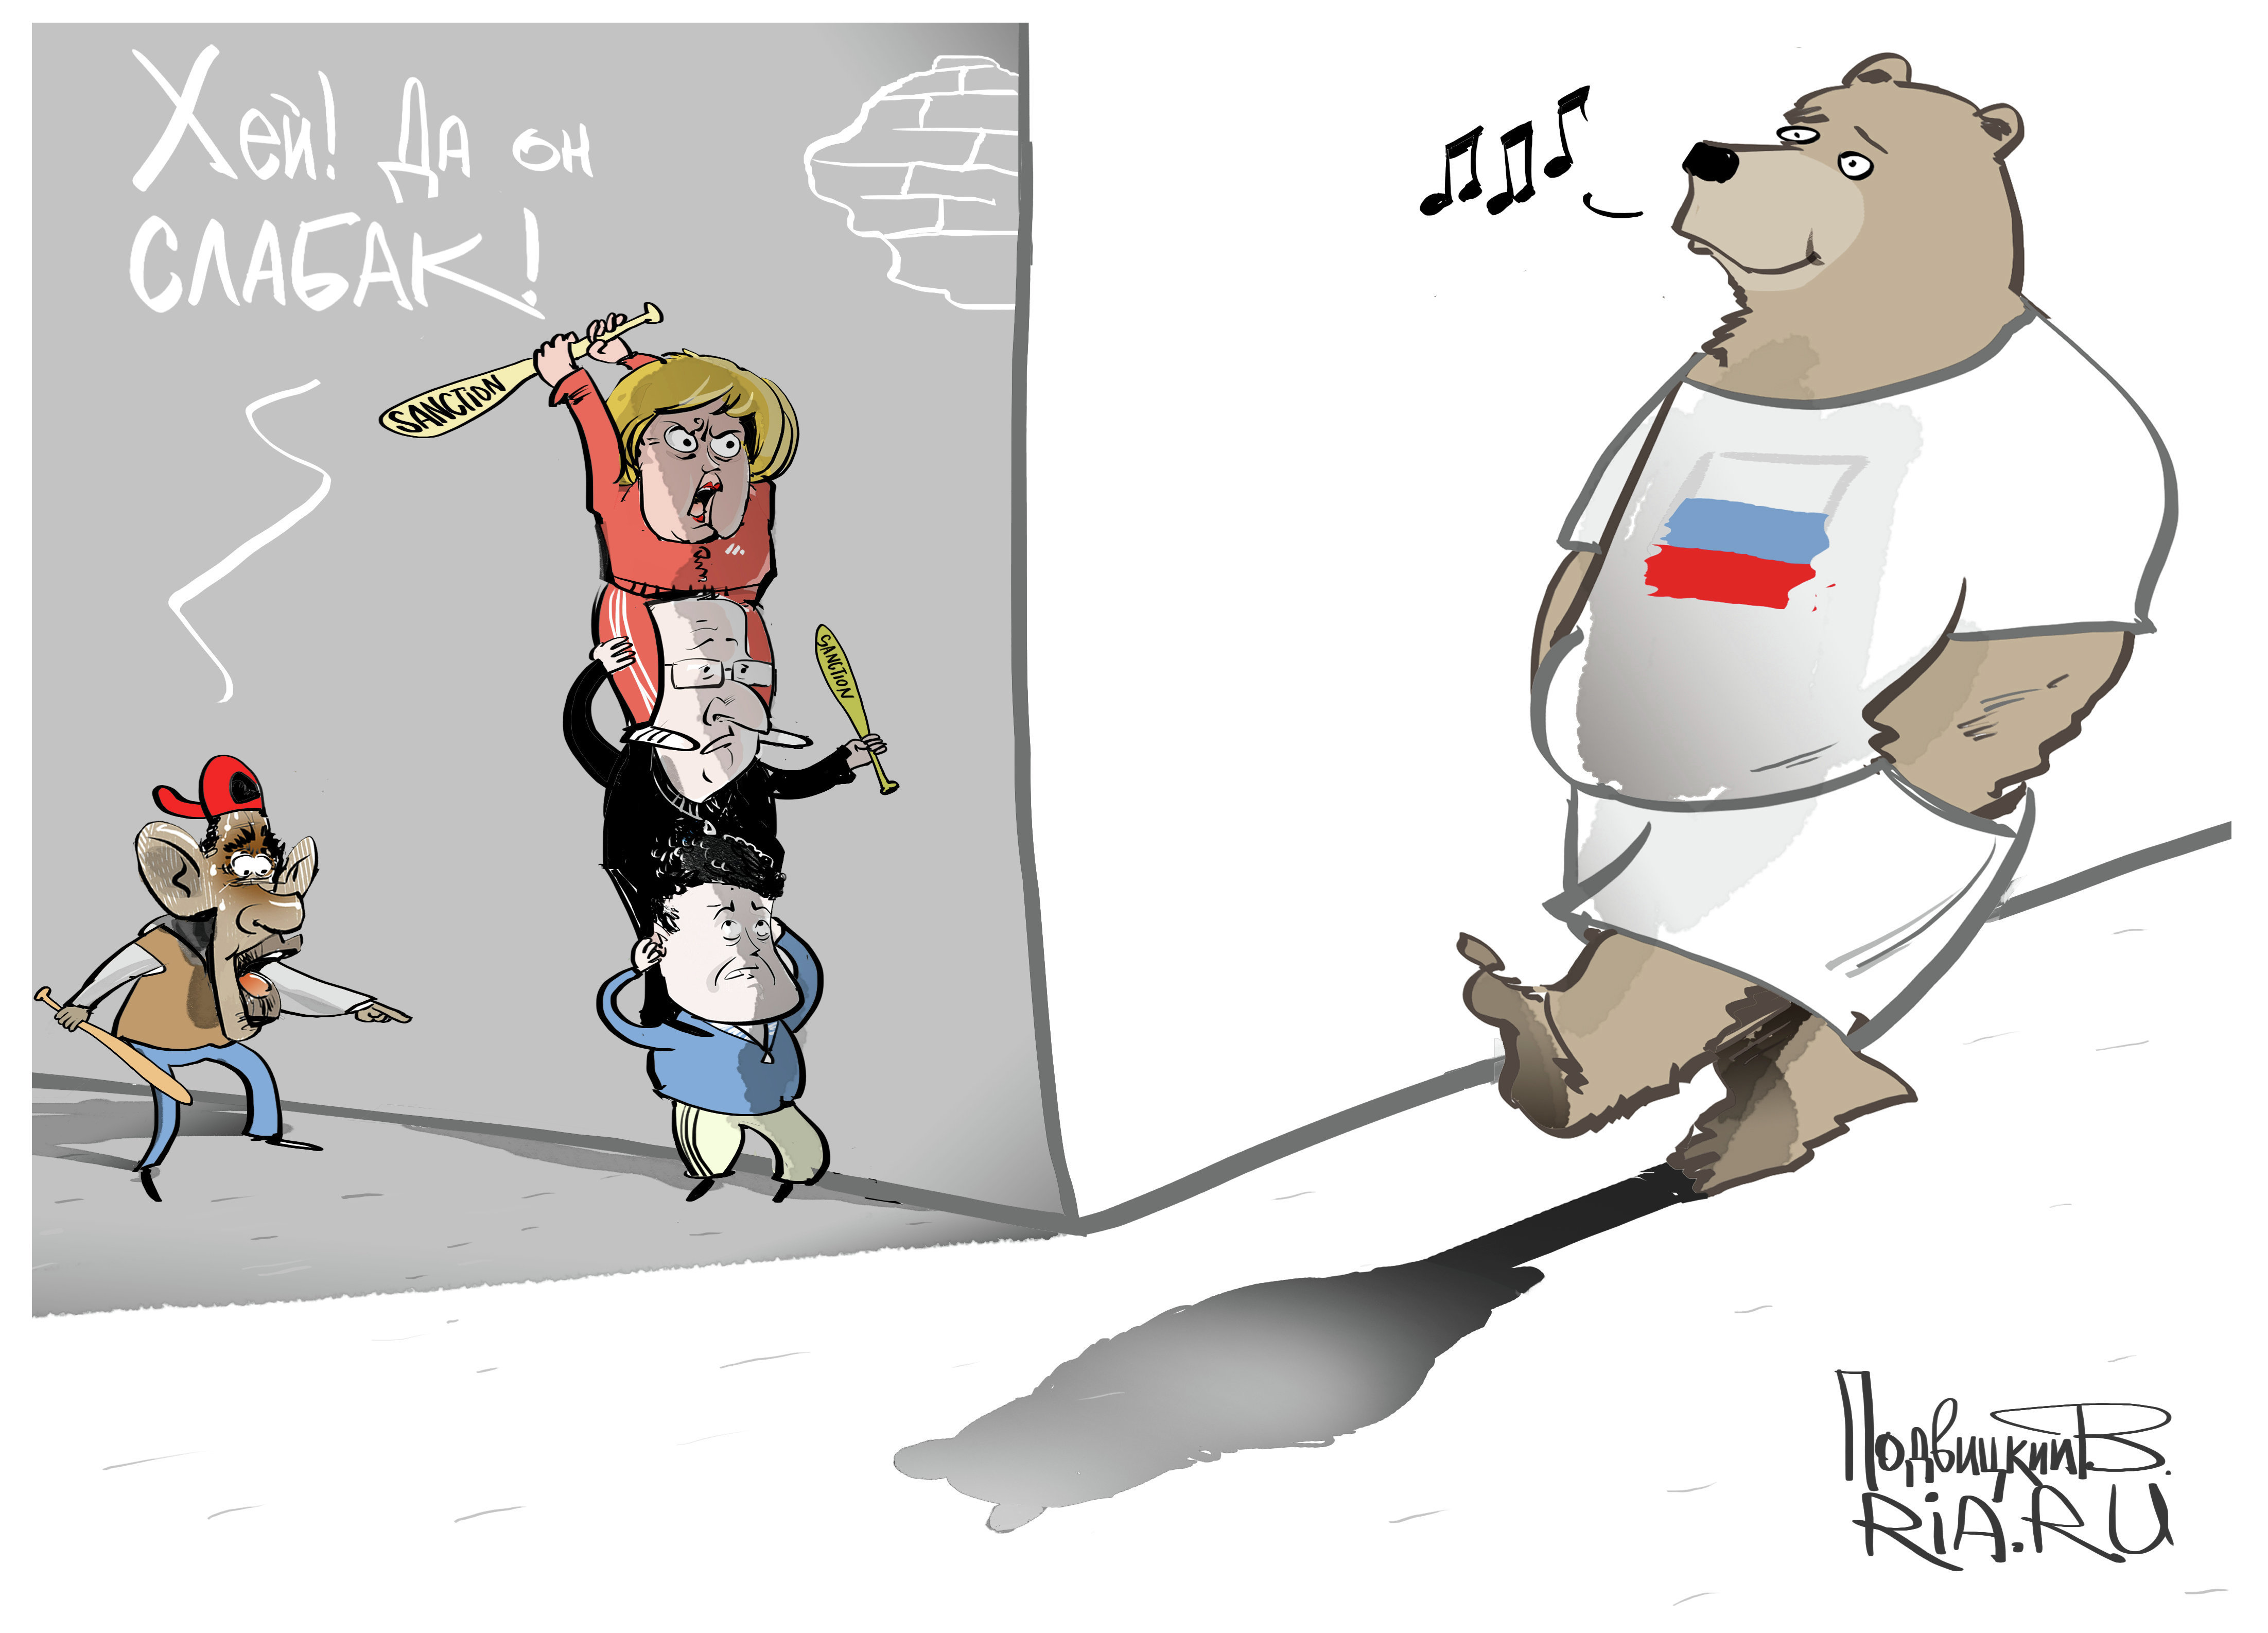 Bbc vs russian